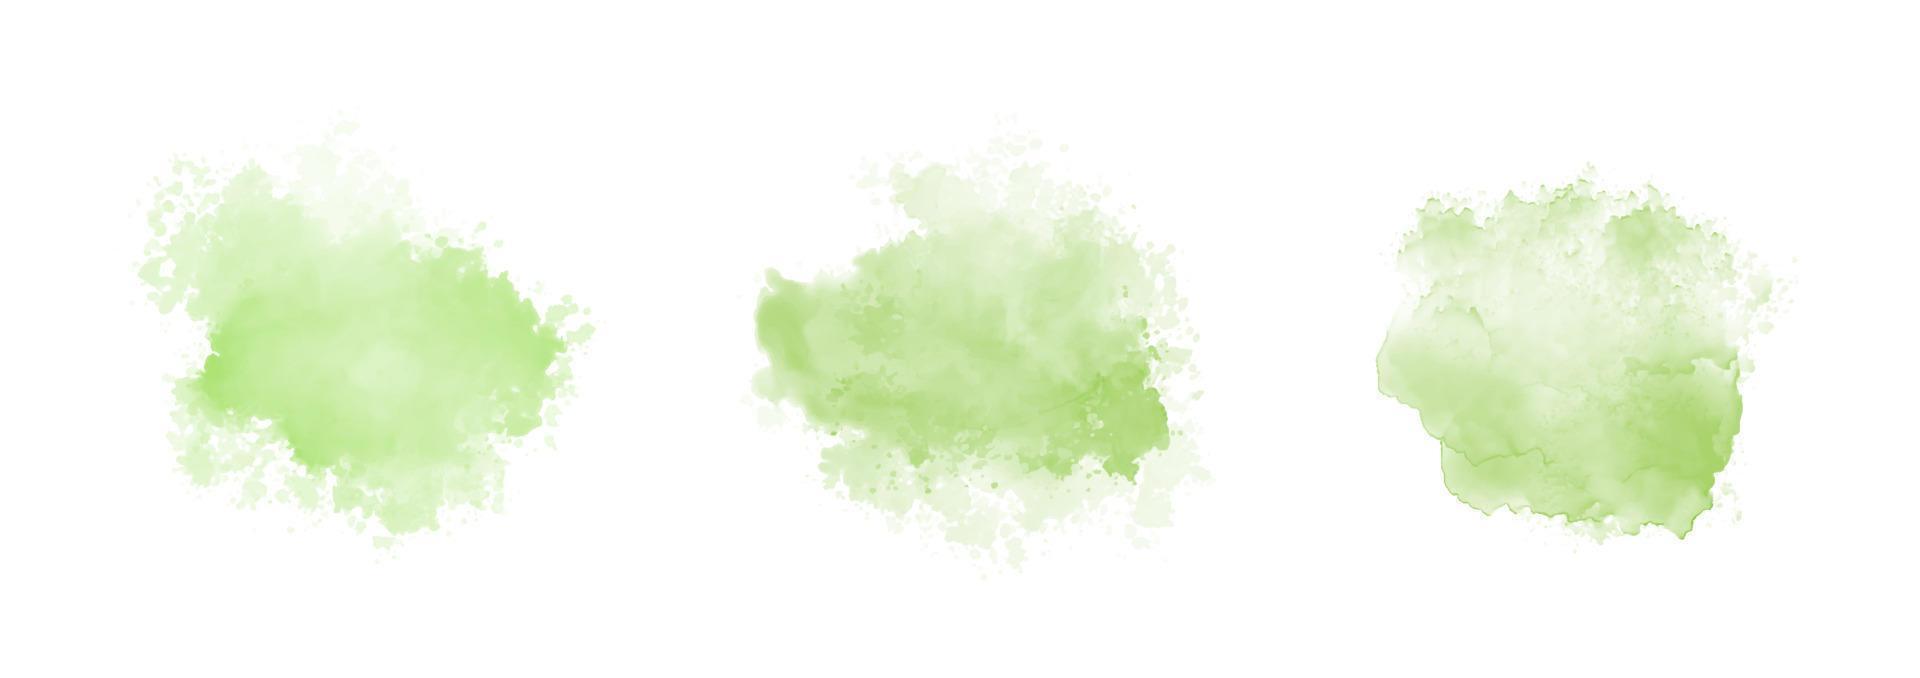 ensemble d'éclaboussures d'eau aquarelle verte abstraite vecteur